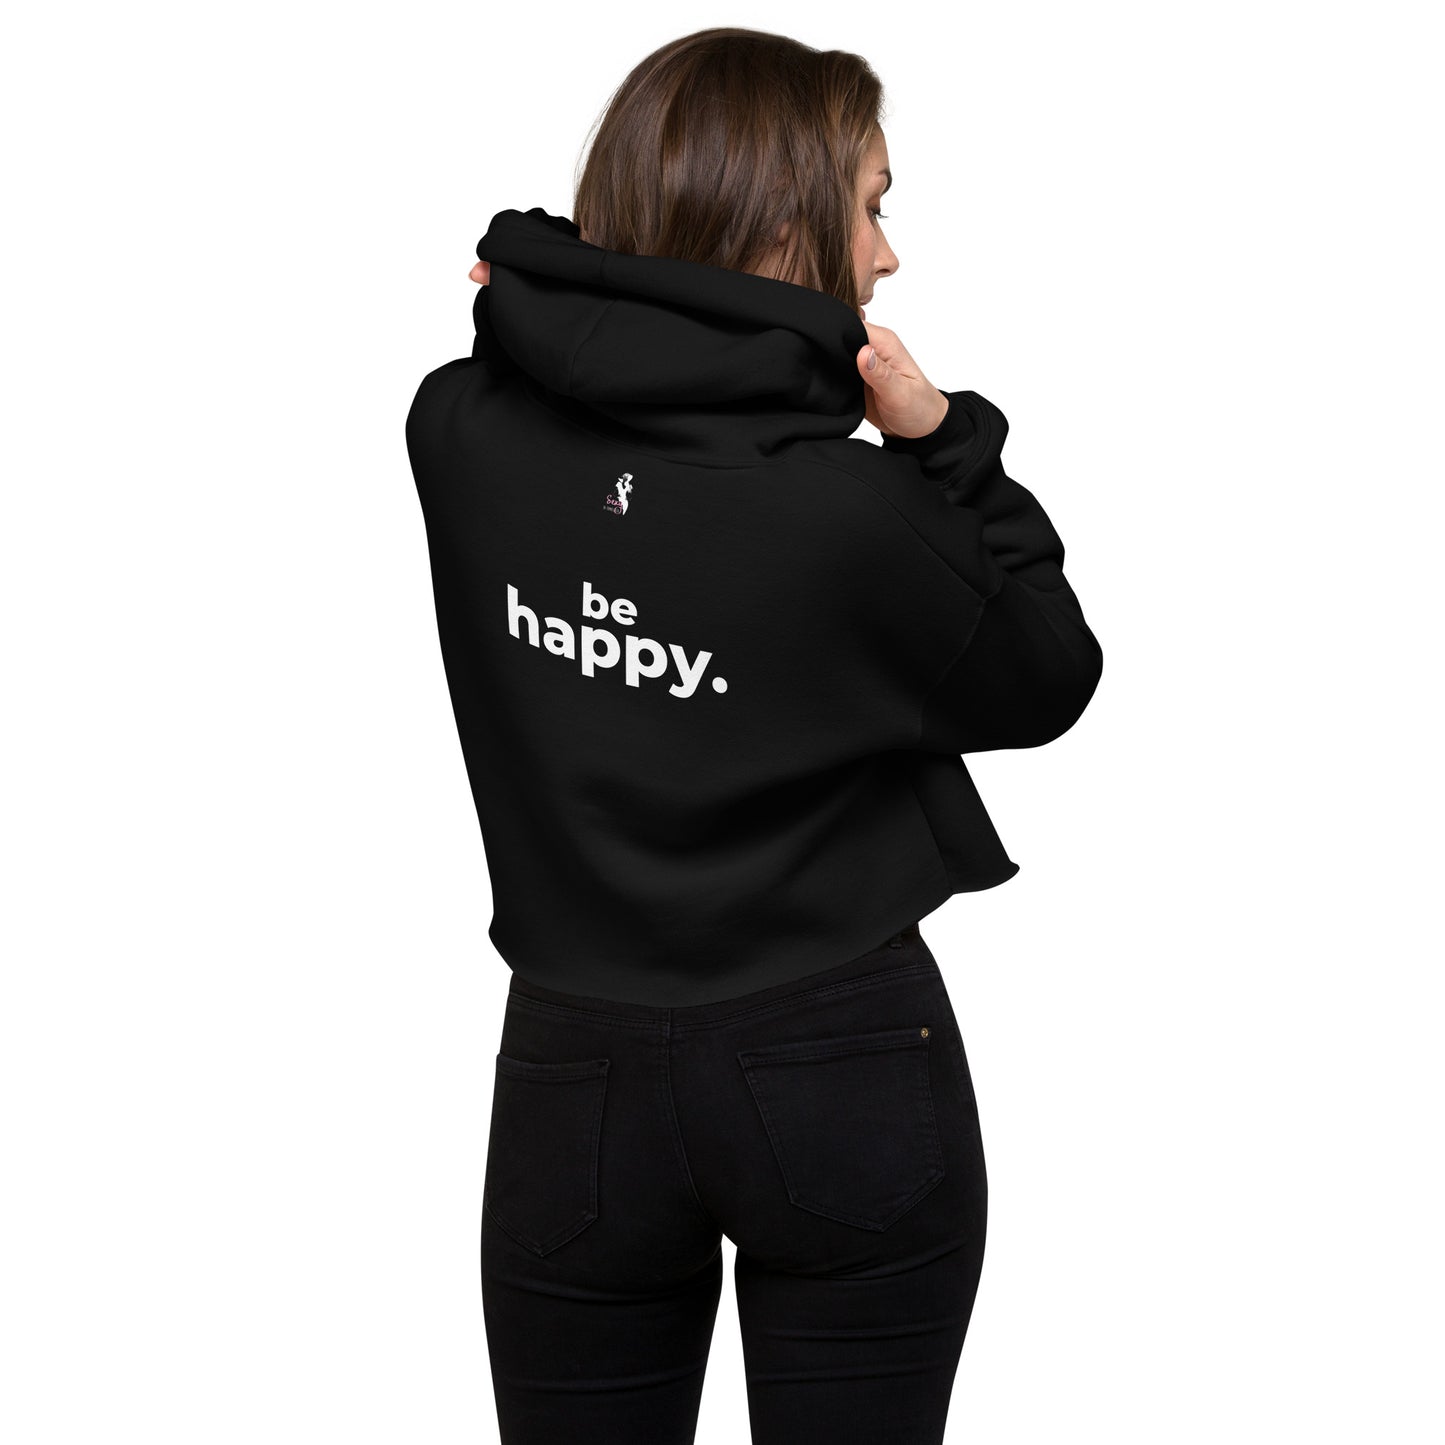 Be happy - Back Message Crop Hoodie